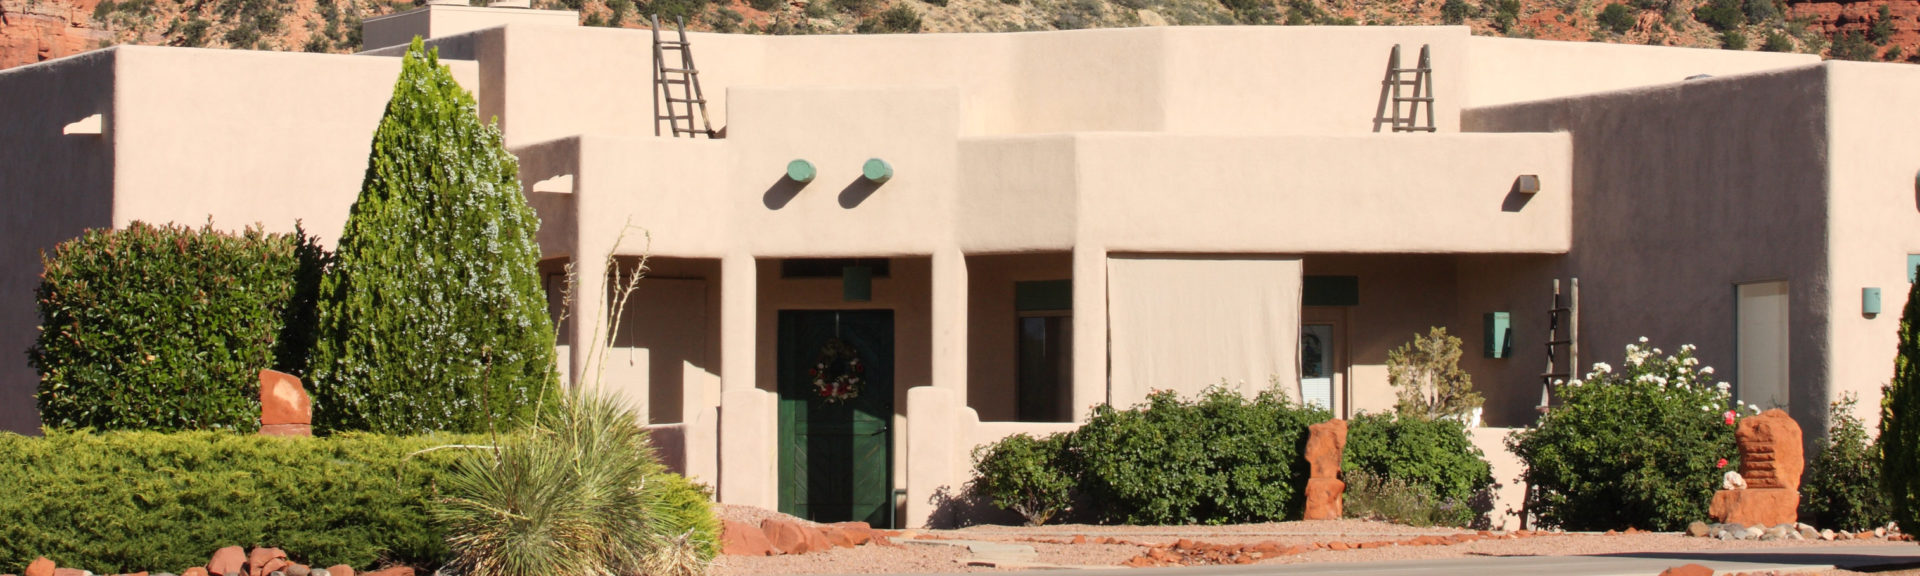 Exterior of house in desert